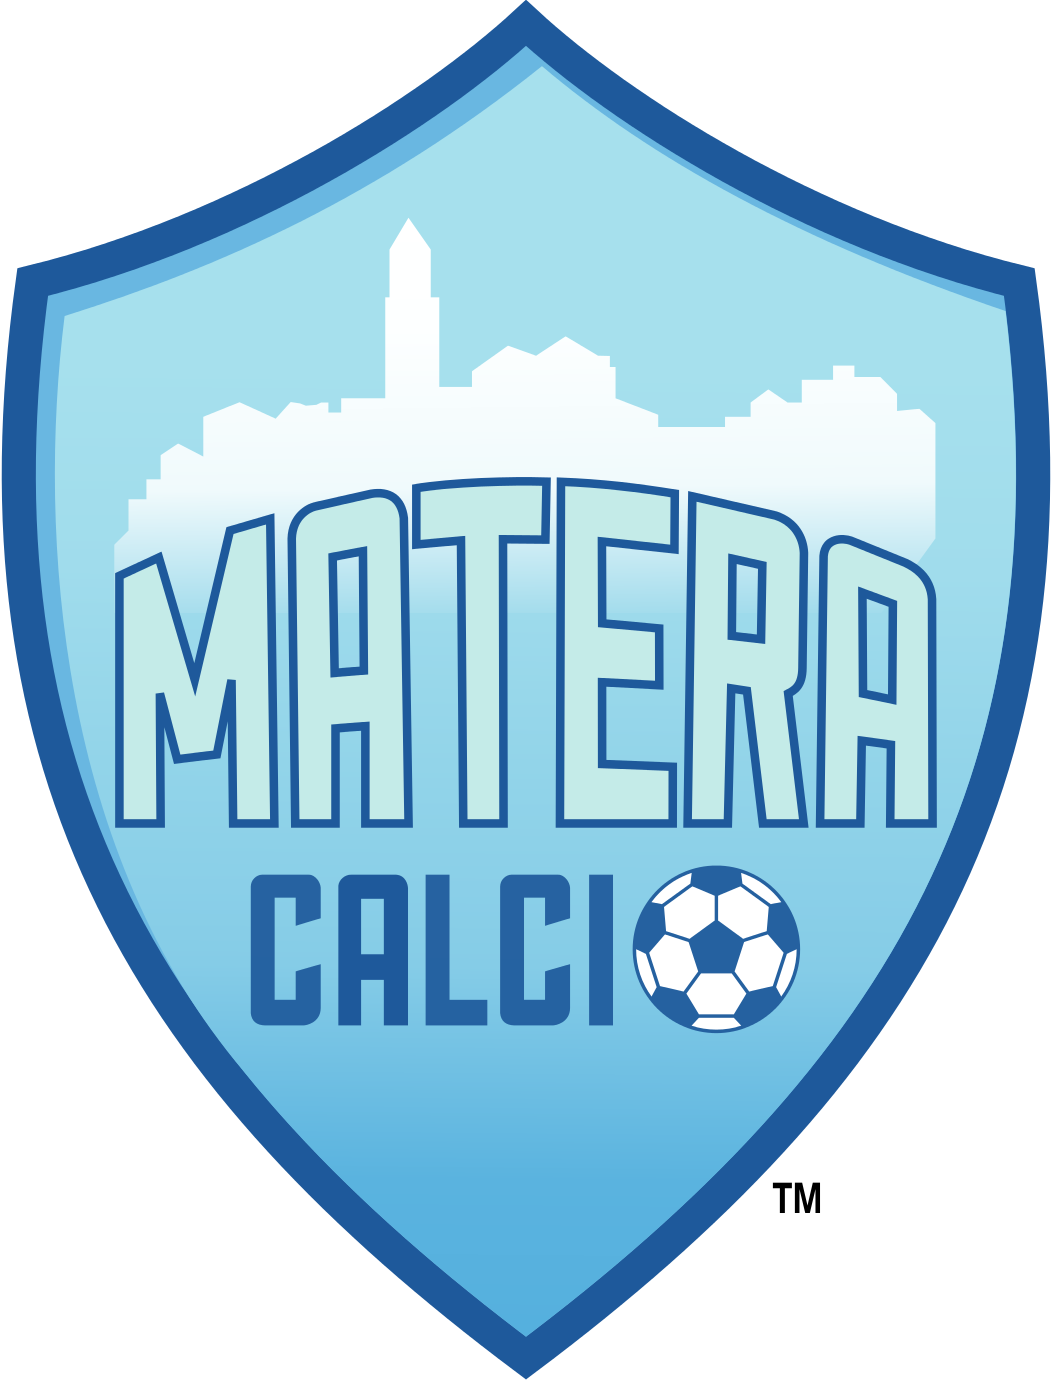 Матера Кальчо - Logo